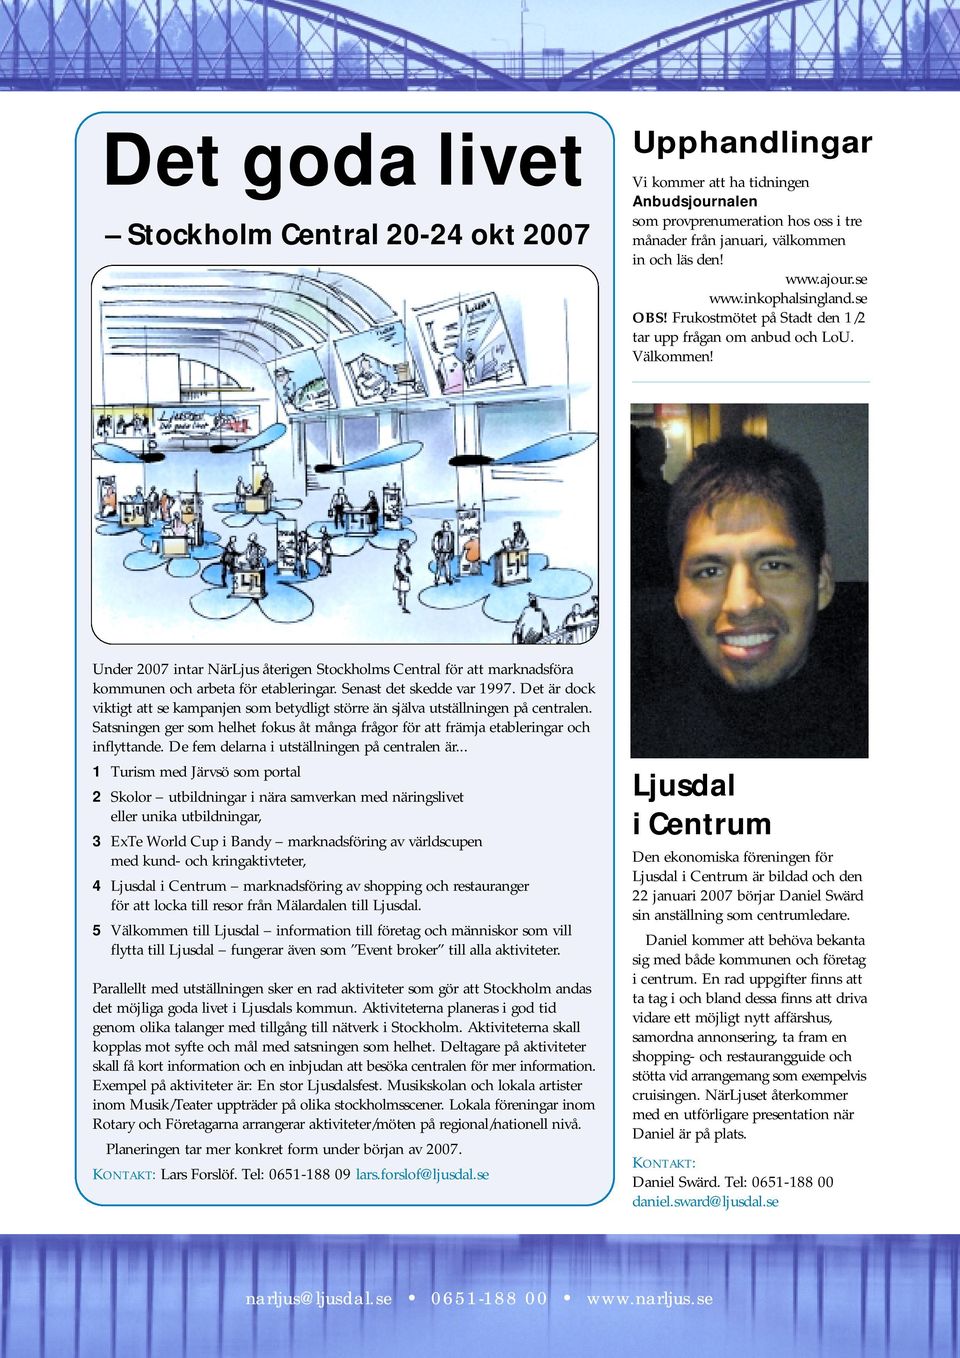 Under 2007 intar NärLjus återigen Stockholms Central för att marknadsföra kommunen och arbeta för etableringar. Senast det skedde var 1997.